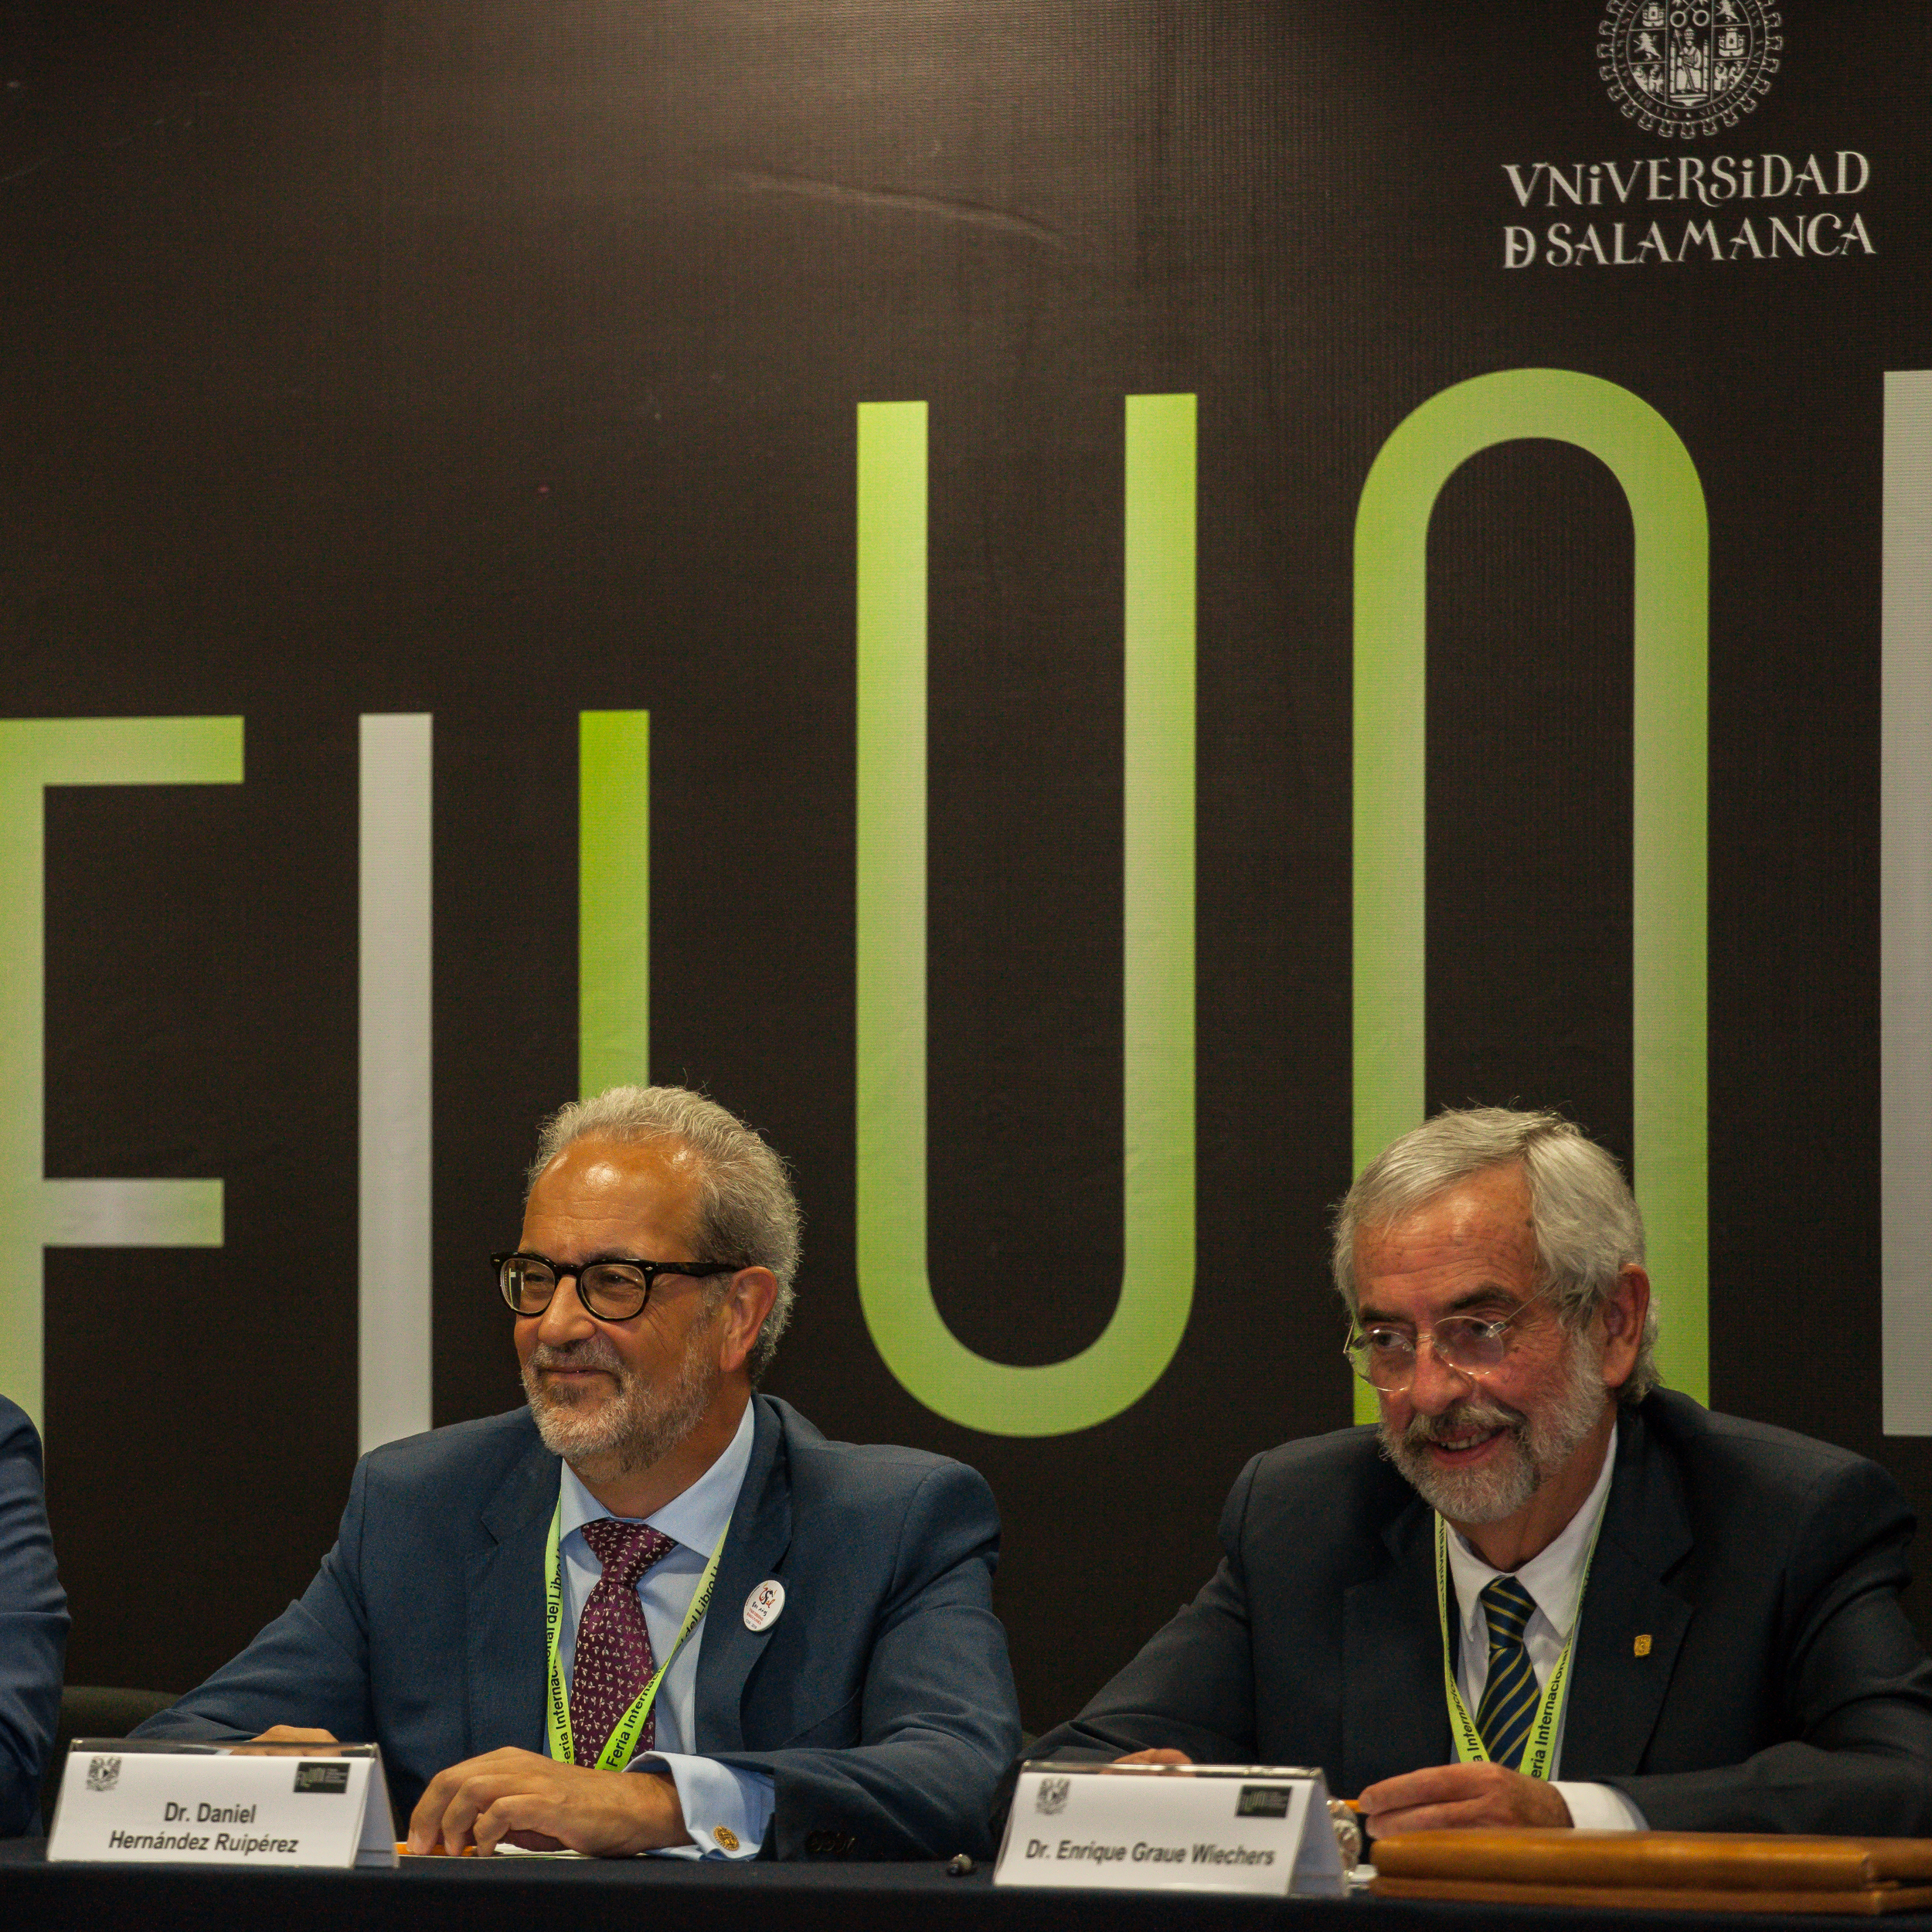 Los rectores Daniel Hernández Ruipérez y Enrique Grauer, durante la inauguración de FILUNI